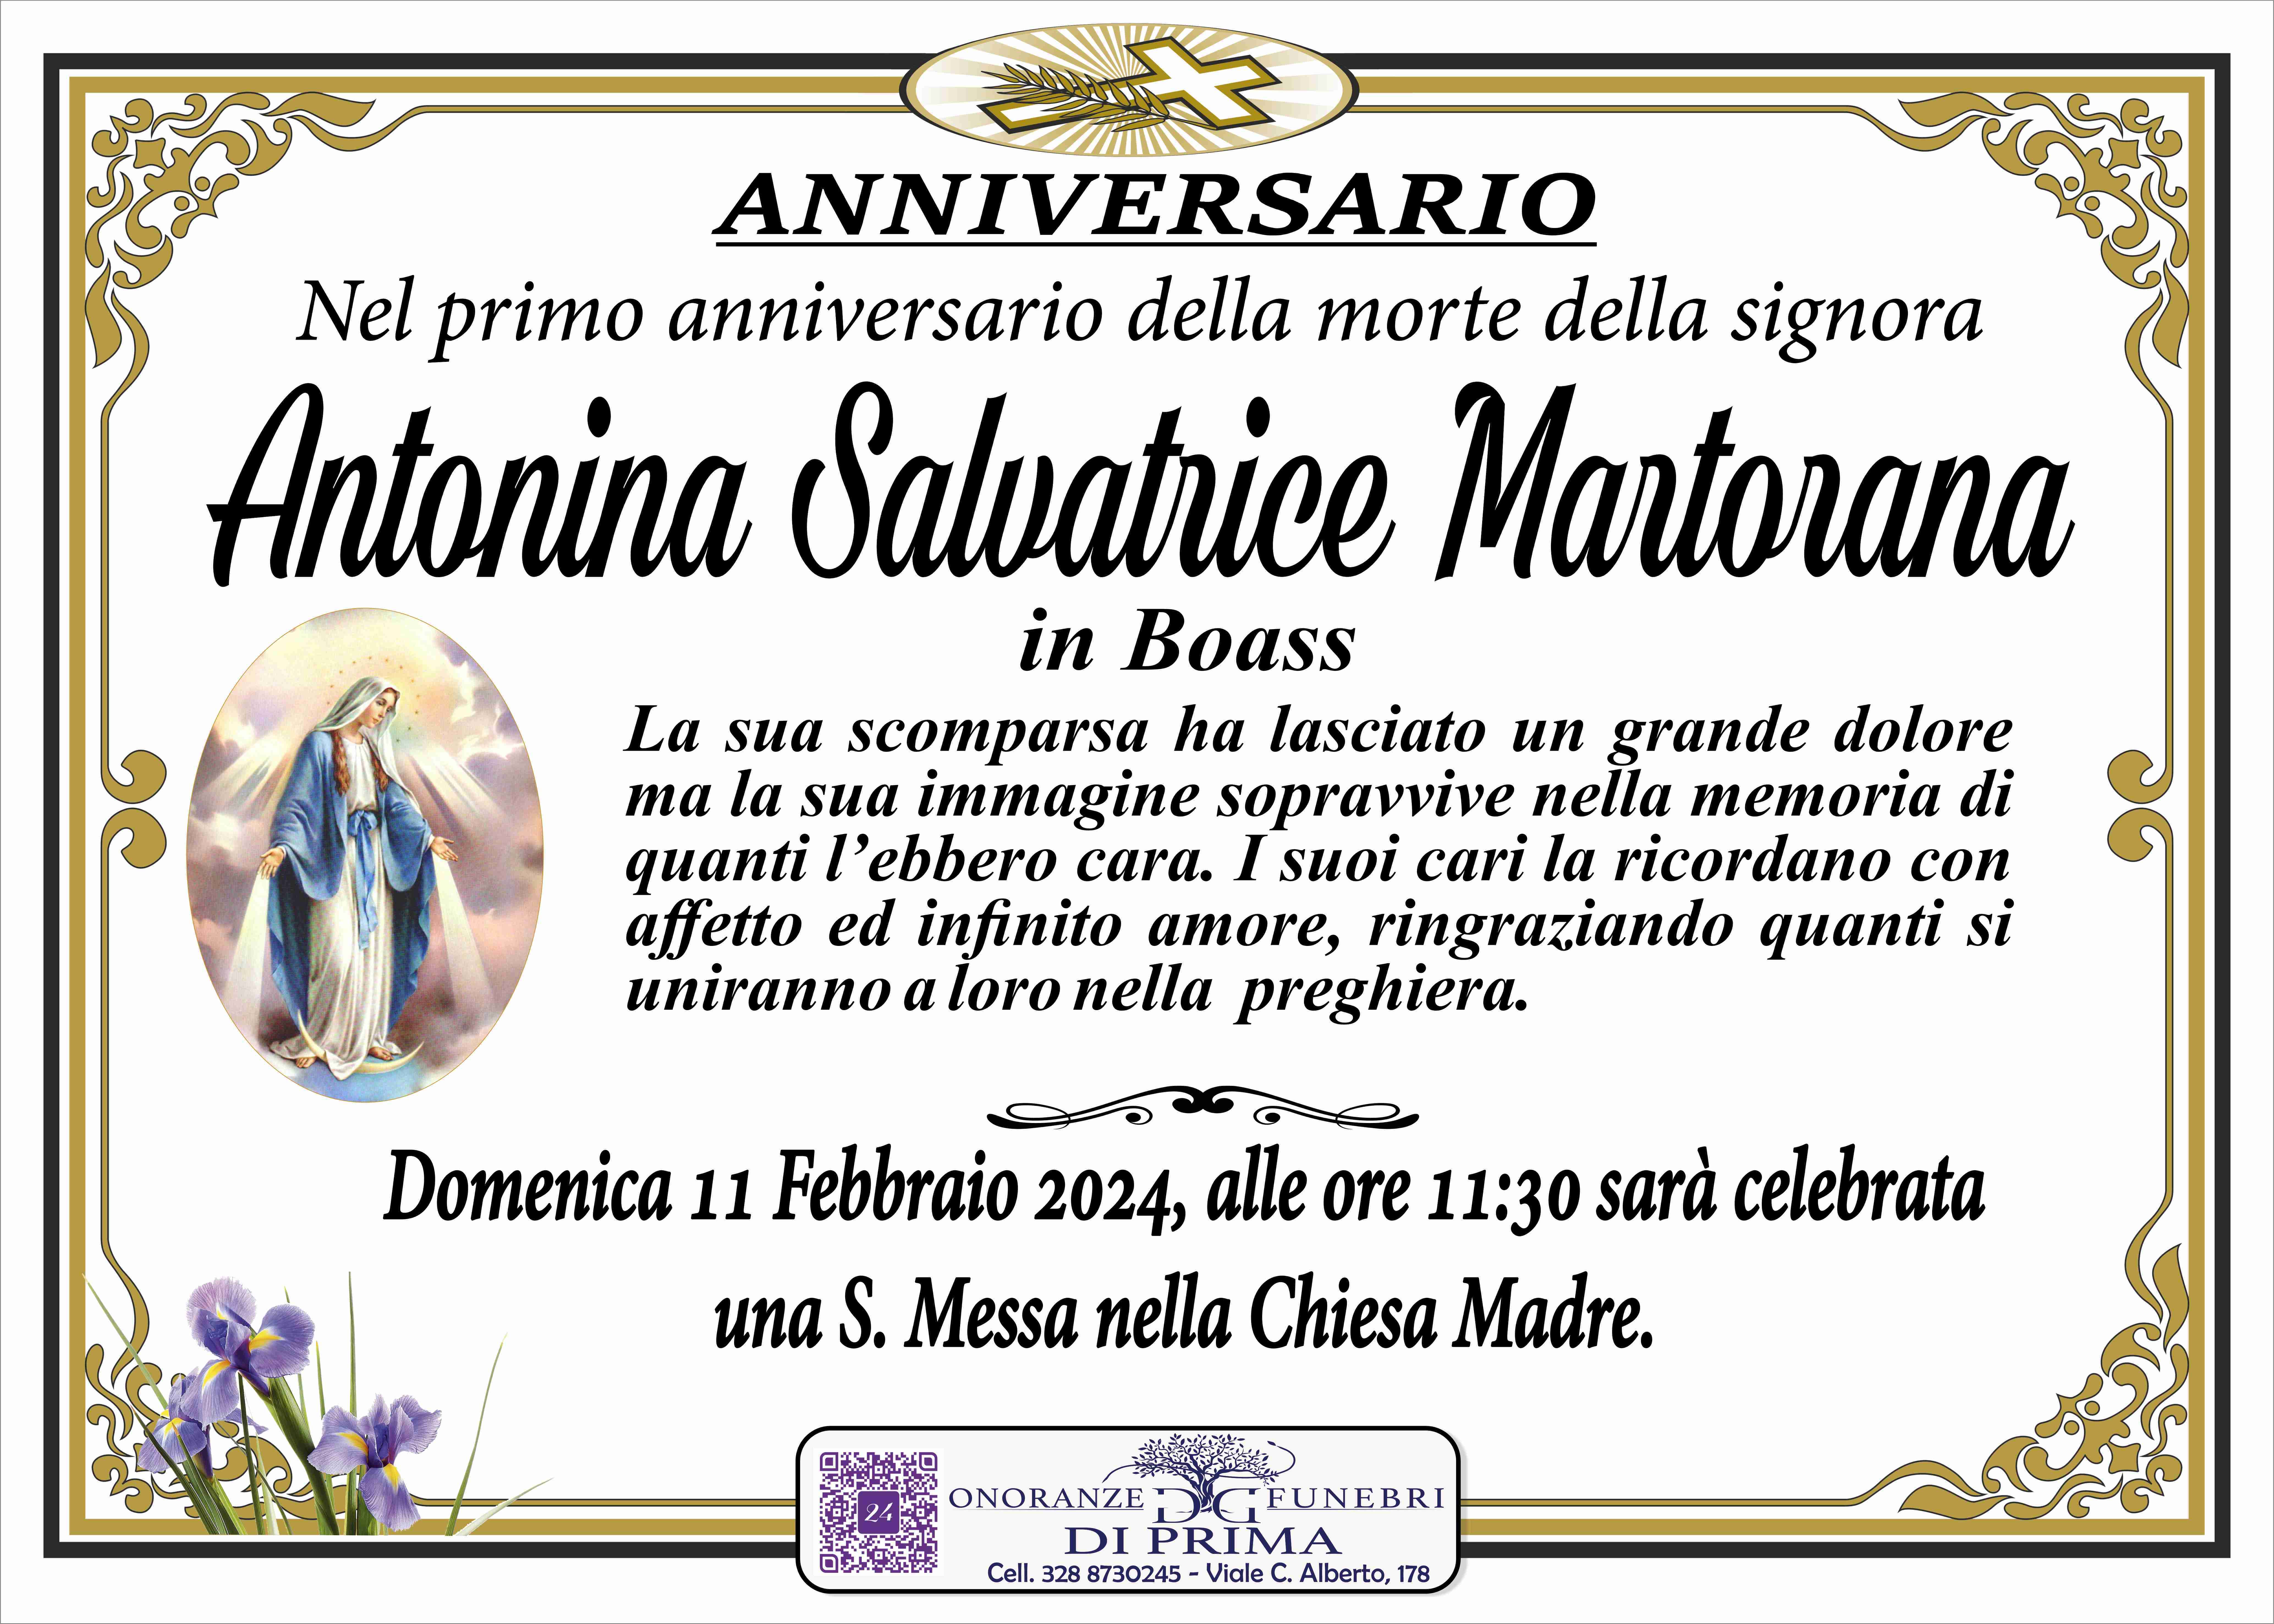 Antonina Salvatrice Martorana